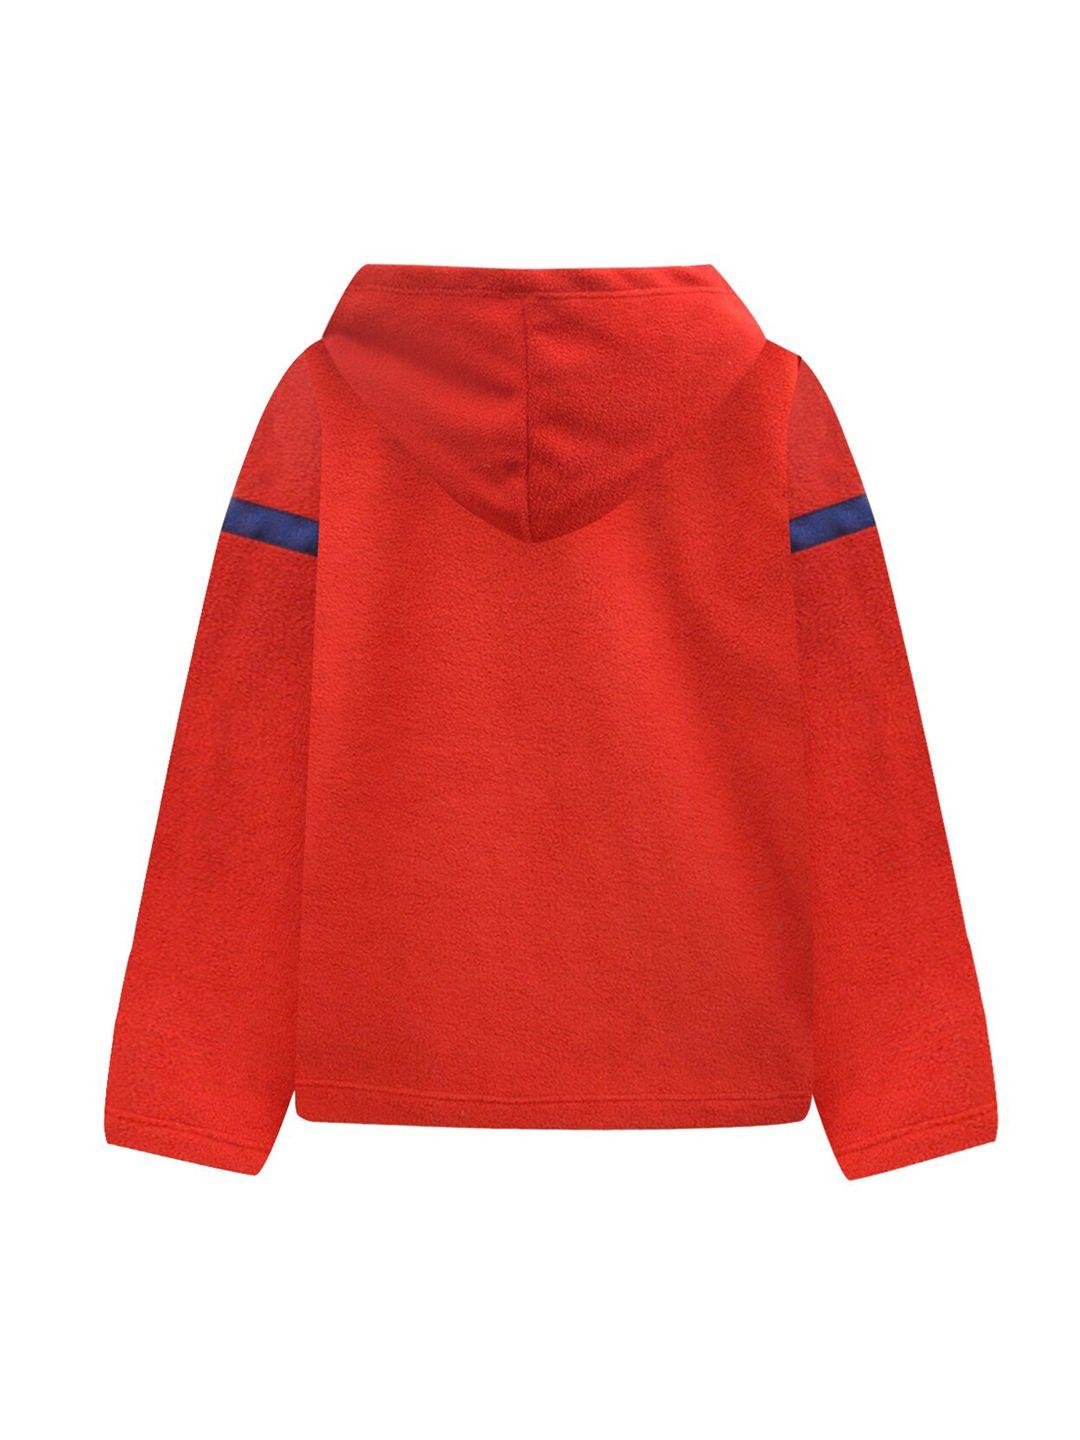 a t u n women red hooded sweatshirt